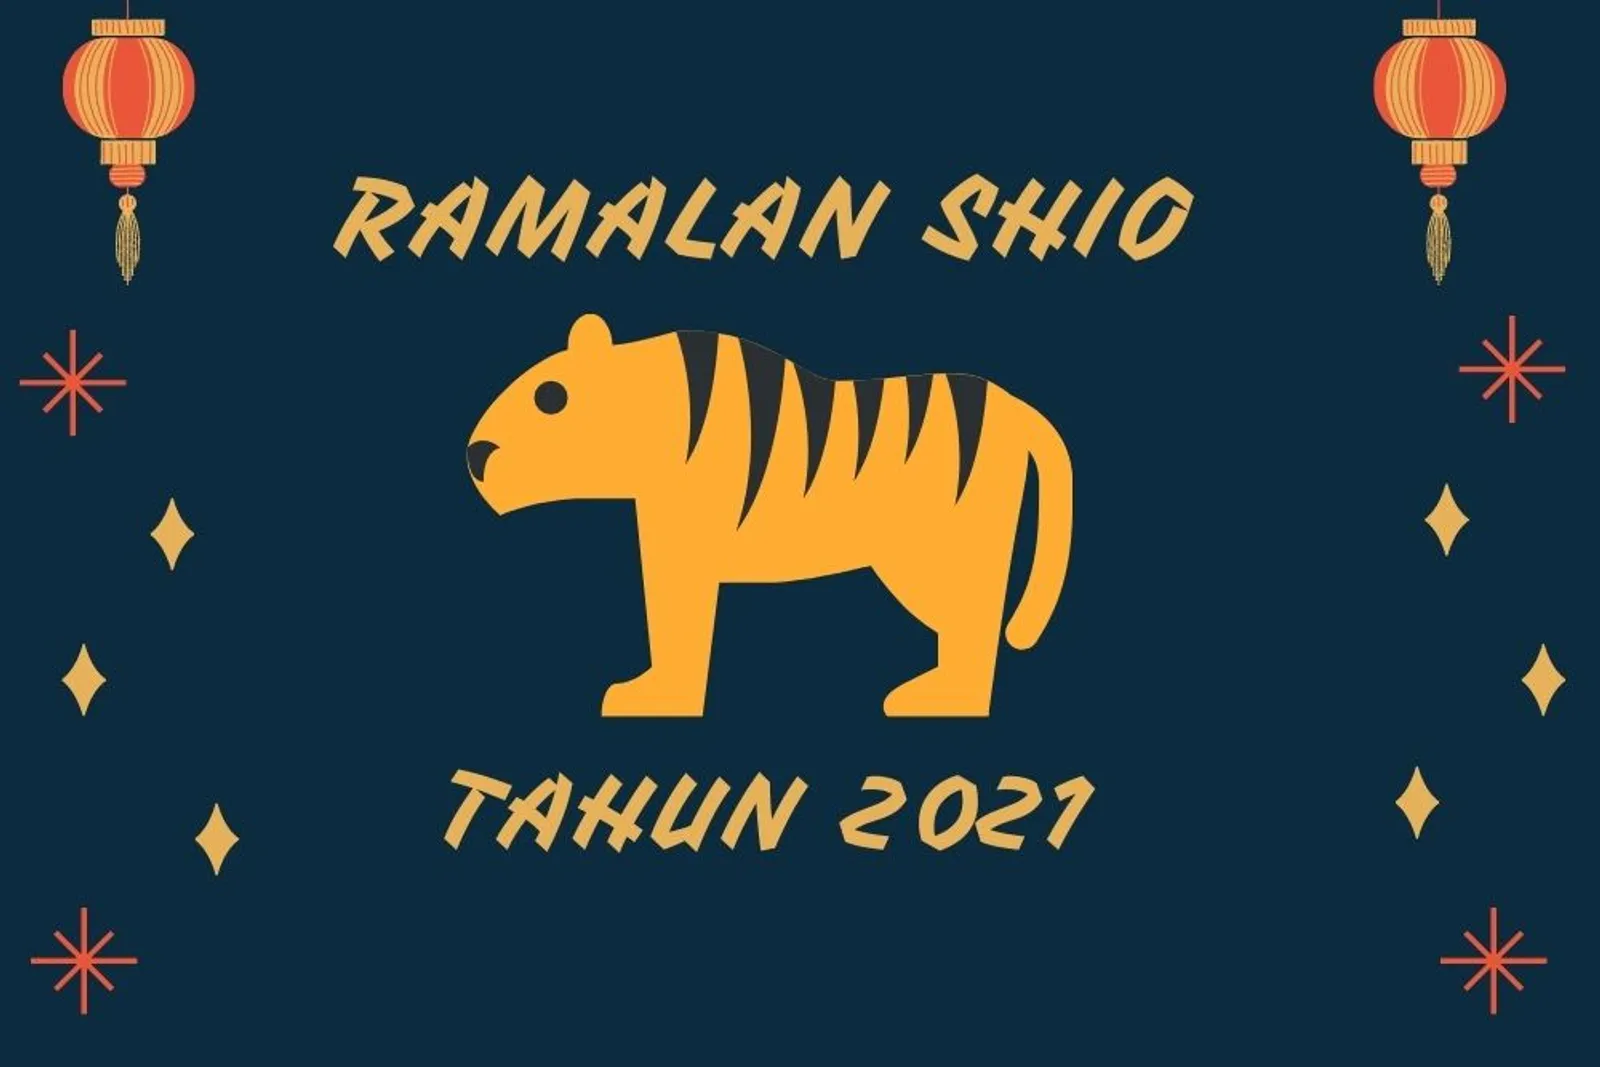 Ramalan Shio Macan Tahun 2021, Tebar Pesona